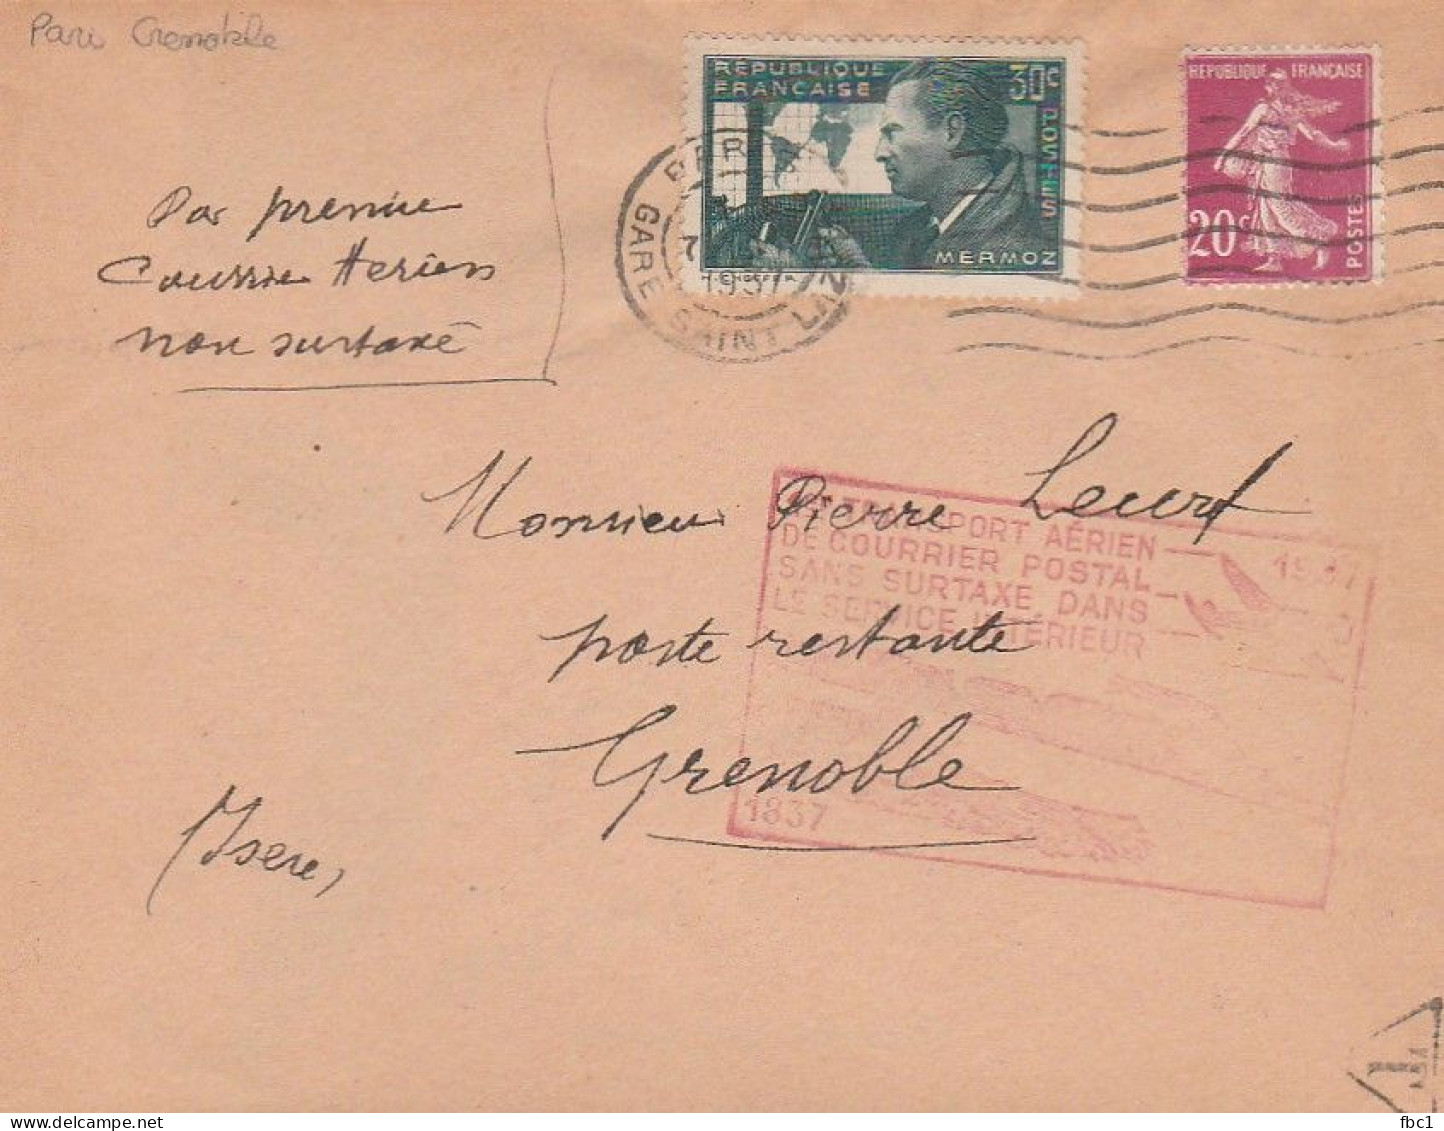 1er Transport Aérien Sans Surtaxe -  Paris - Grenoble    07/07/1937 - 1927-1959 Covers & Documents